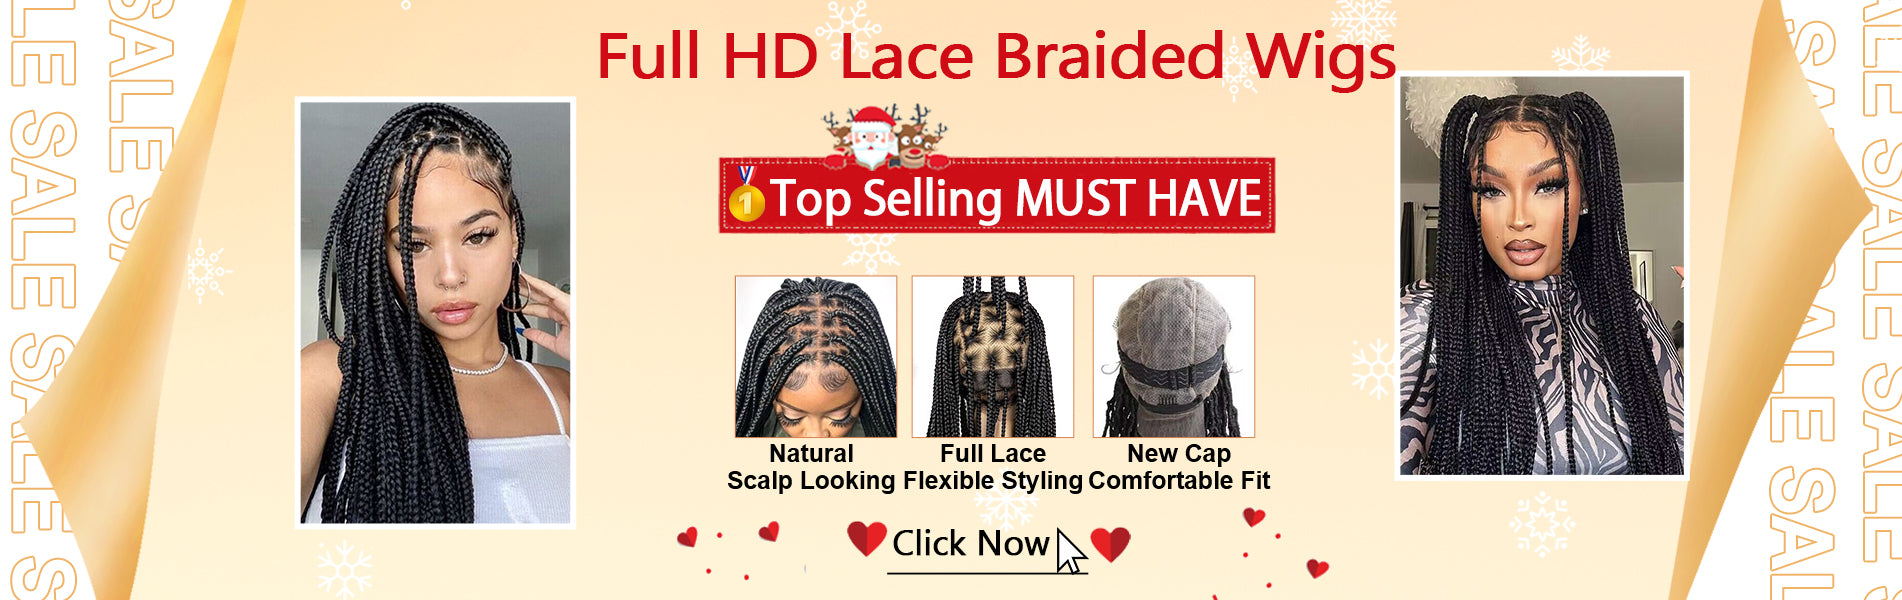 full hd lace braided wig mybraidedwig